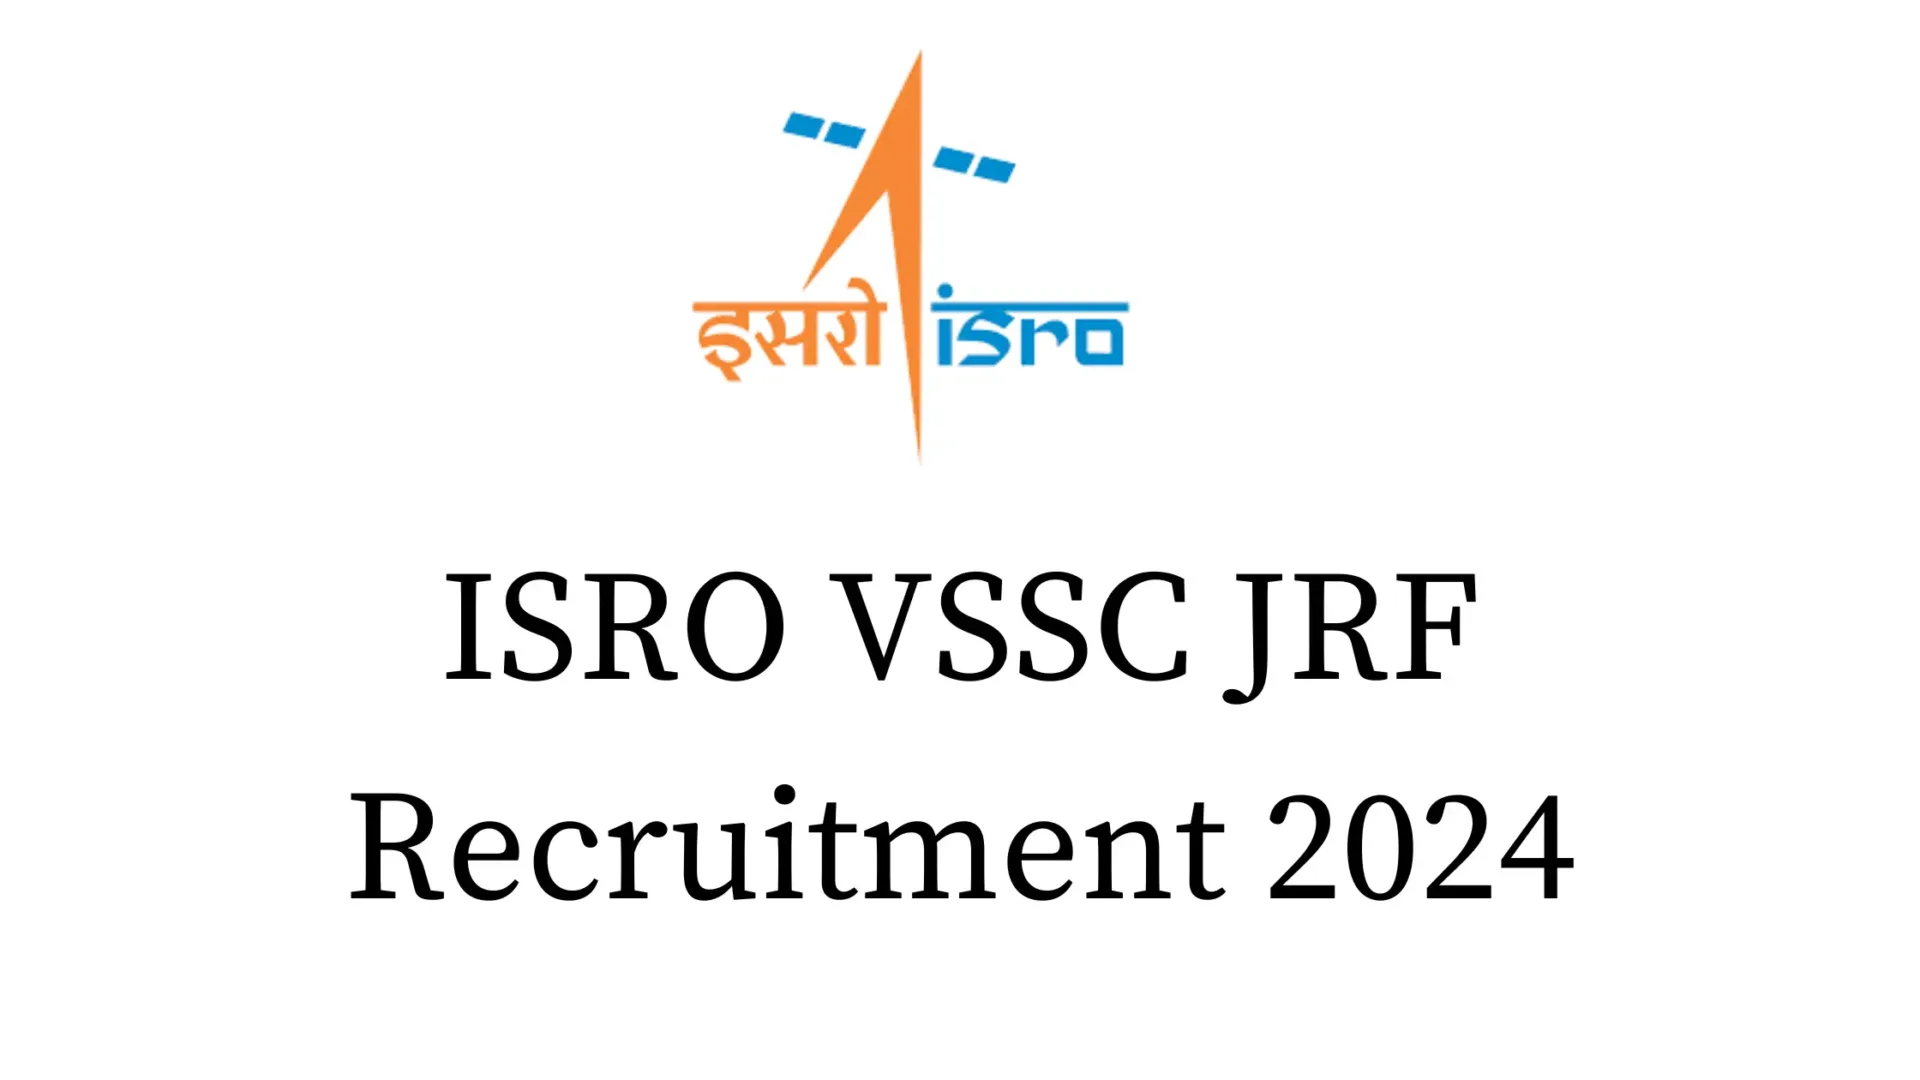 ISRO VSSC JRF Recruitment 2024